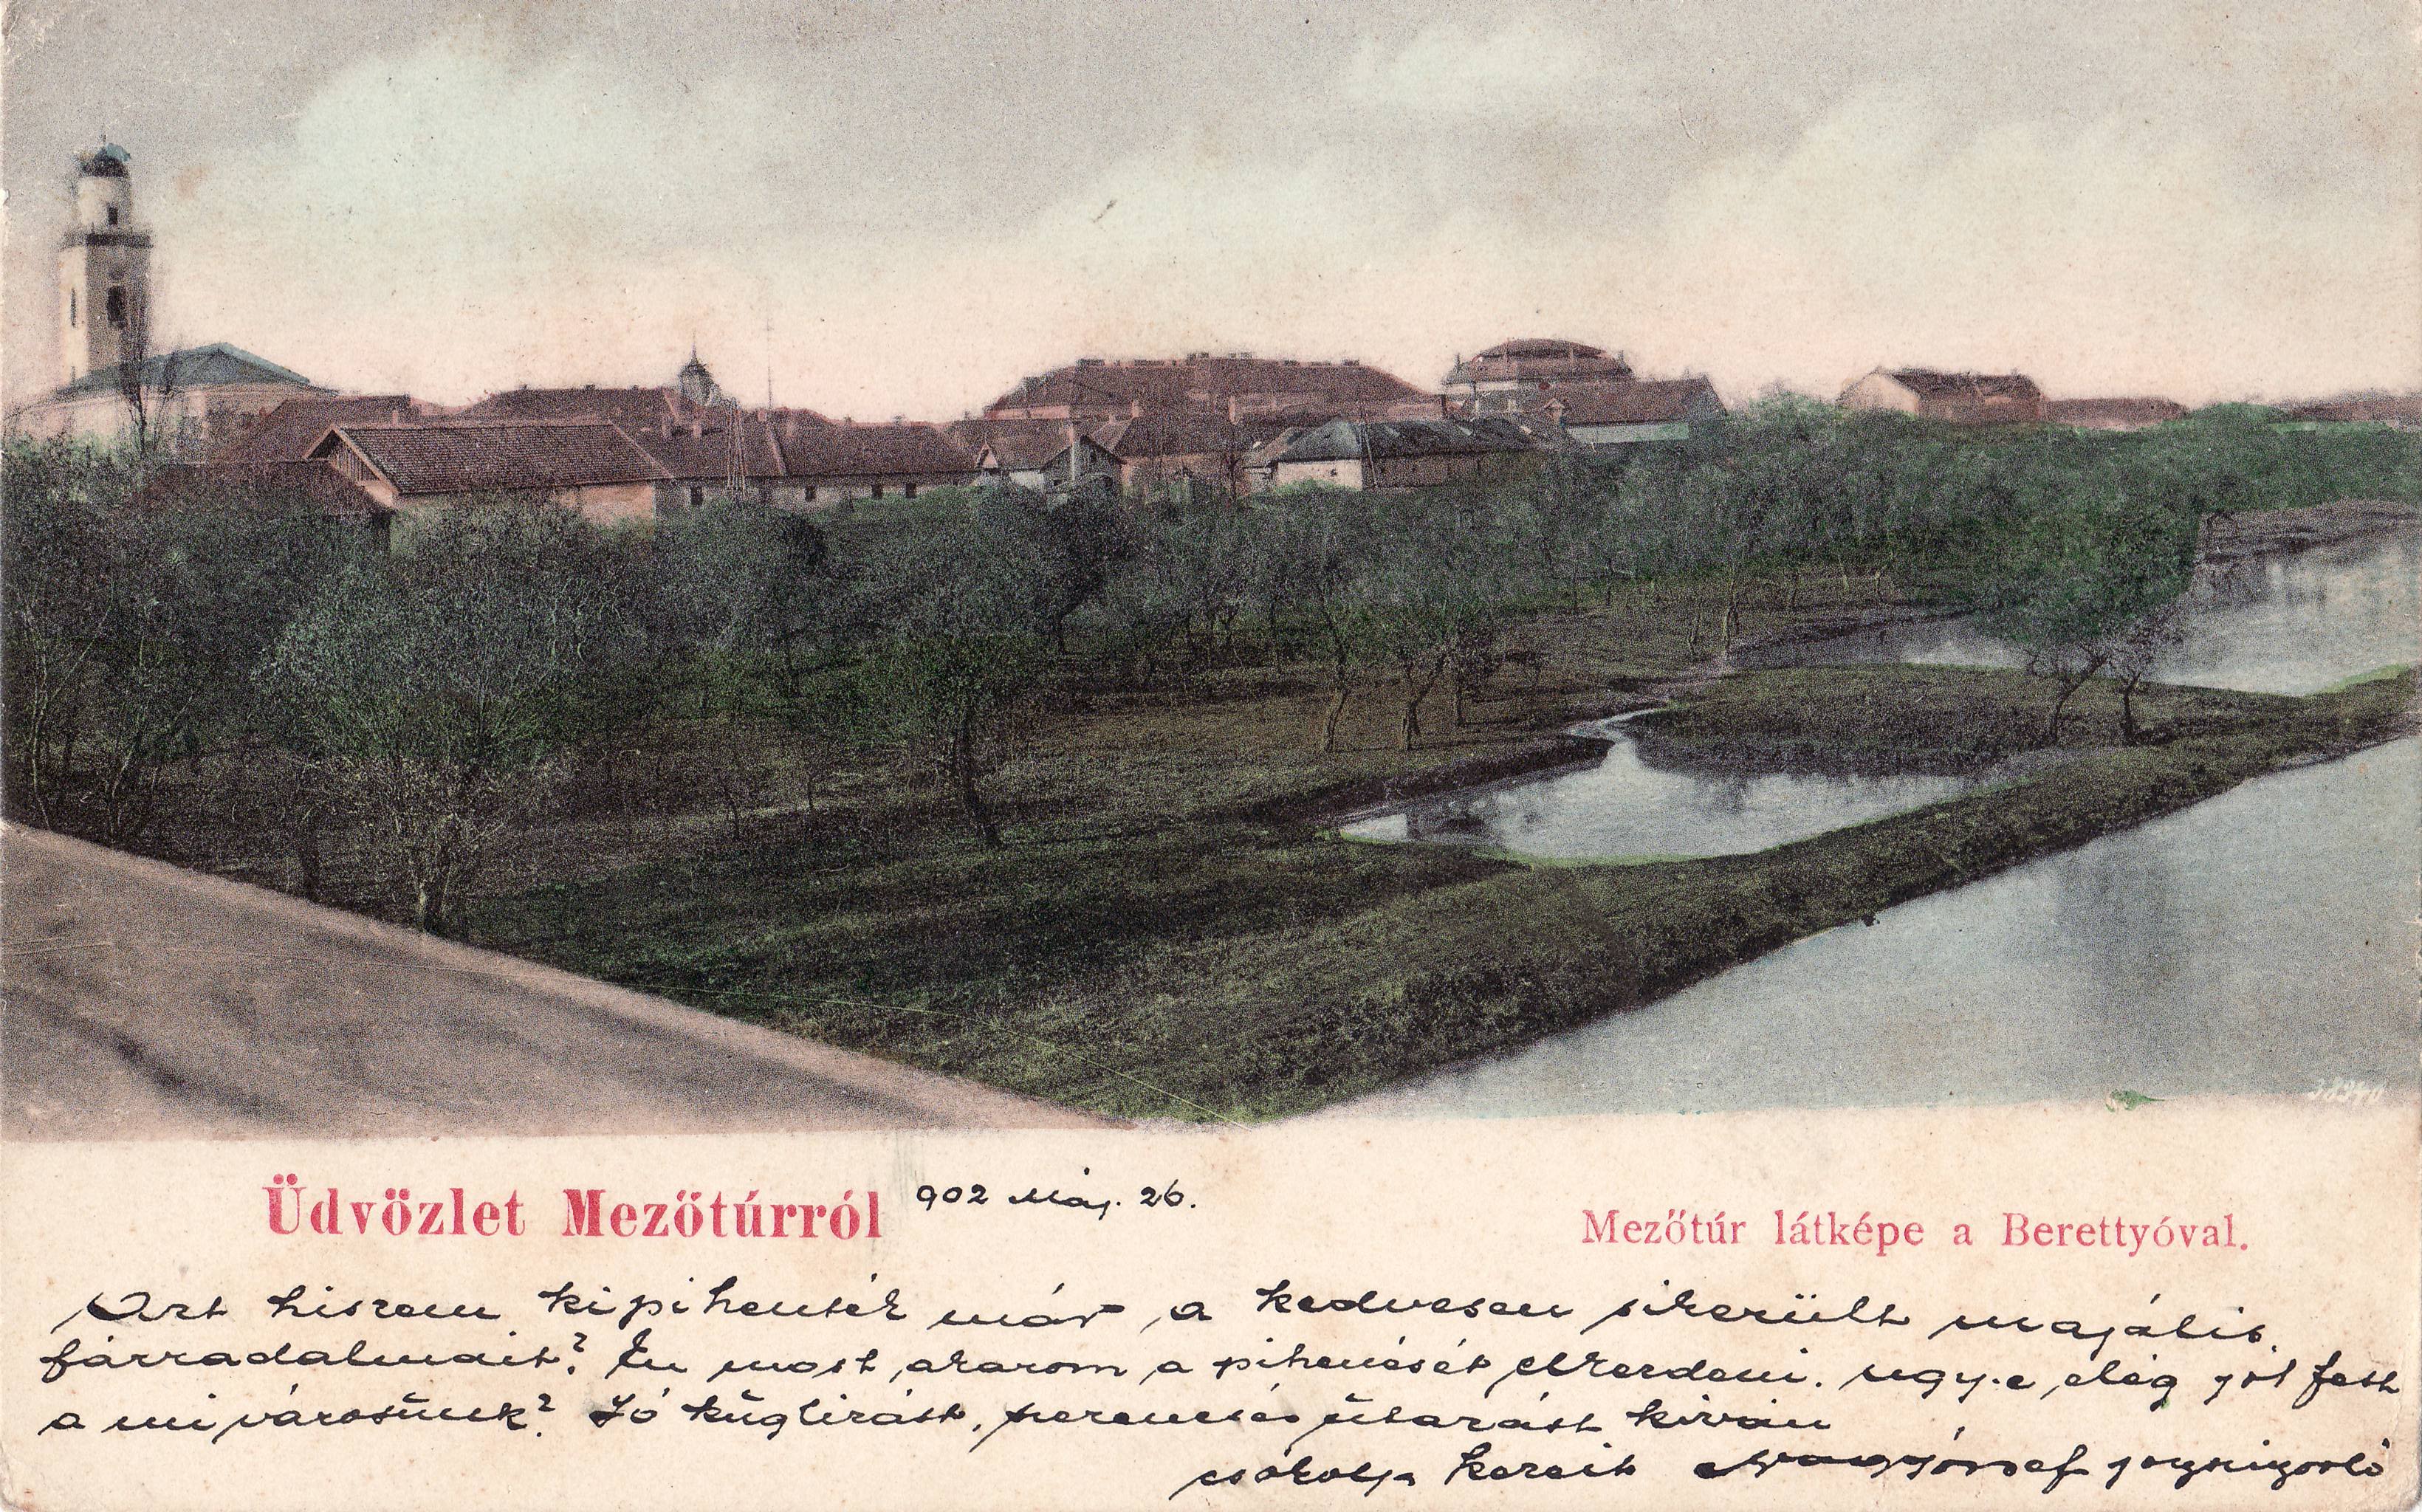 Üdvözlet Mezőtúrról – Mezőtúr látképe a Berettyóval (Magyar Környezetvédelmi és Vízügyi Múzeum - Duna Múzeum CC BY-NC-SA)